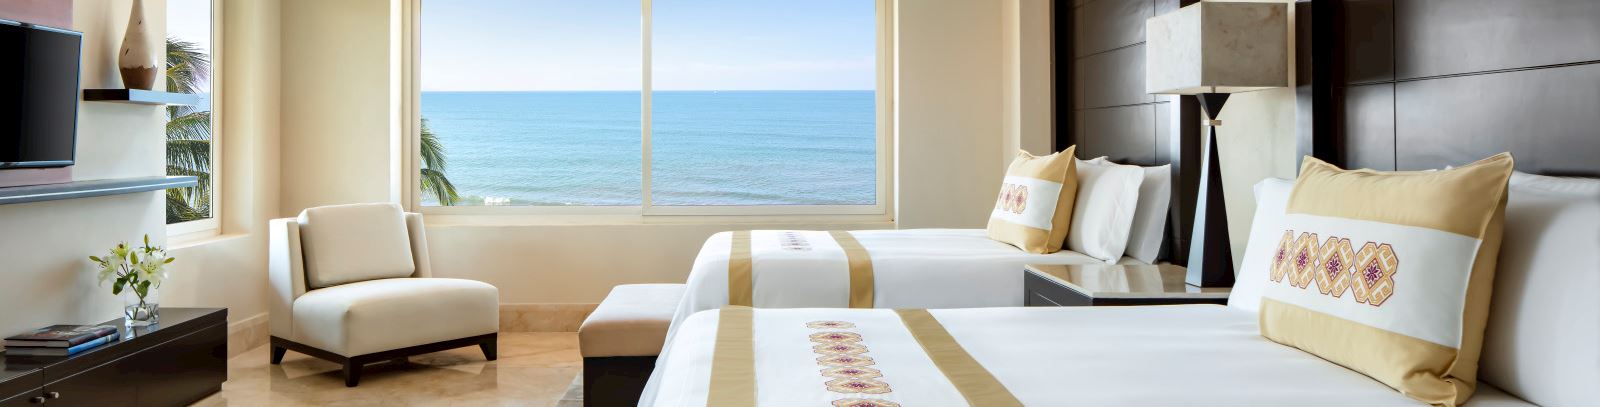 Grand Velas Riviera Nayarit offering Two Bedroom Presidential Suite